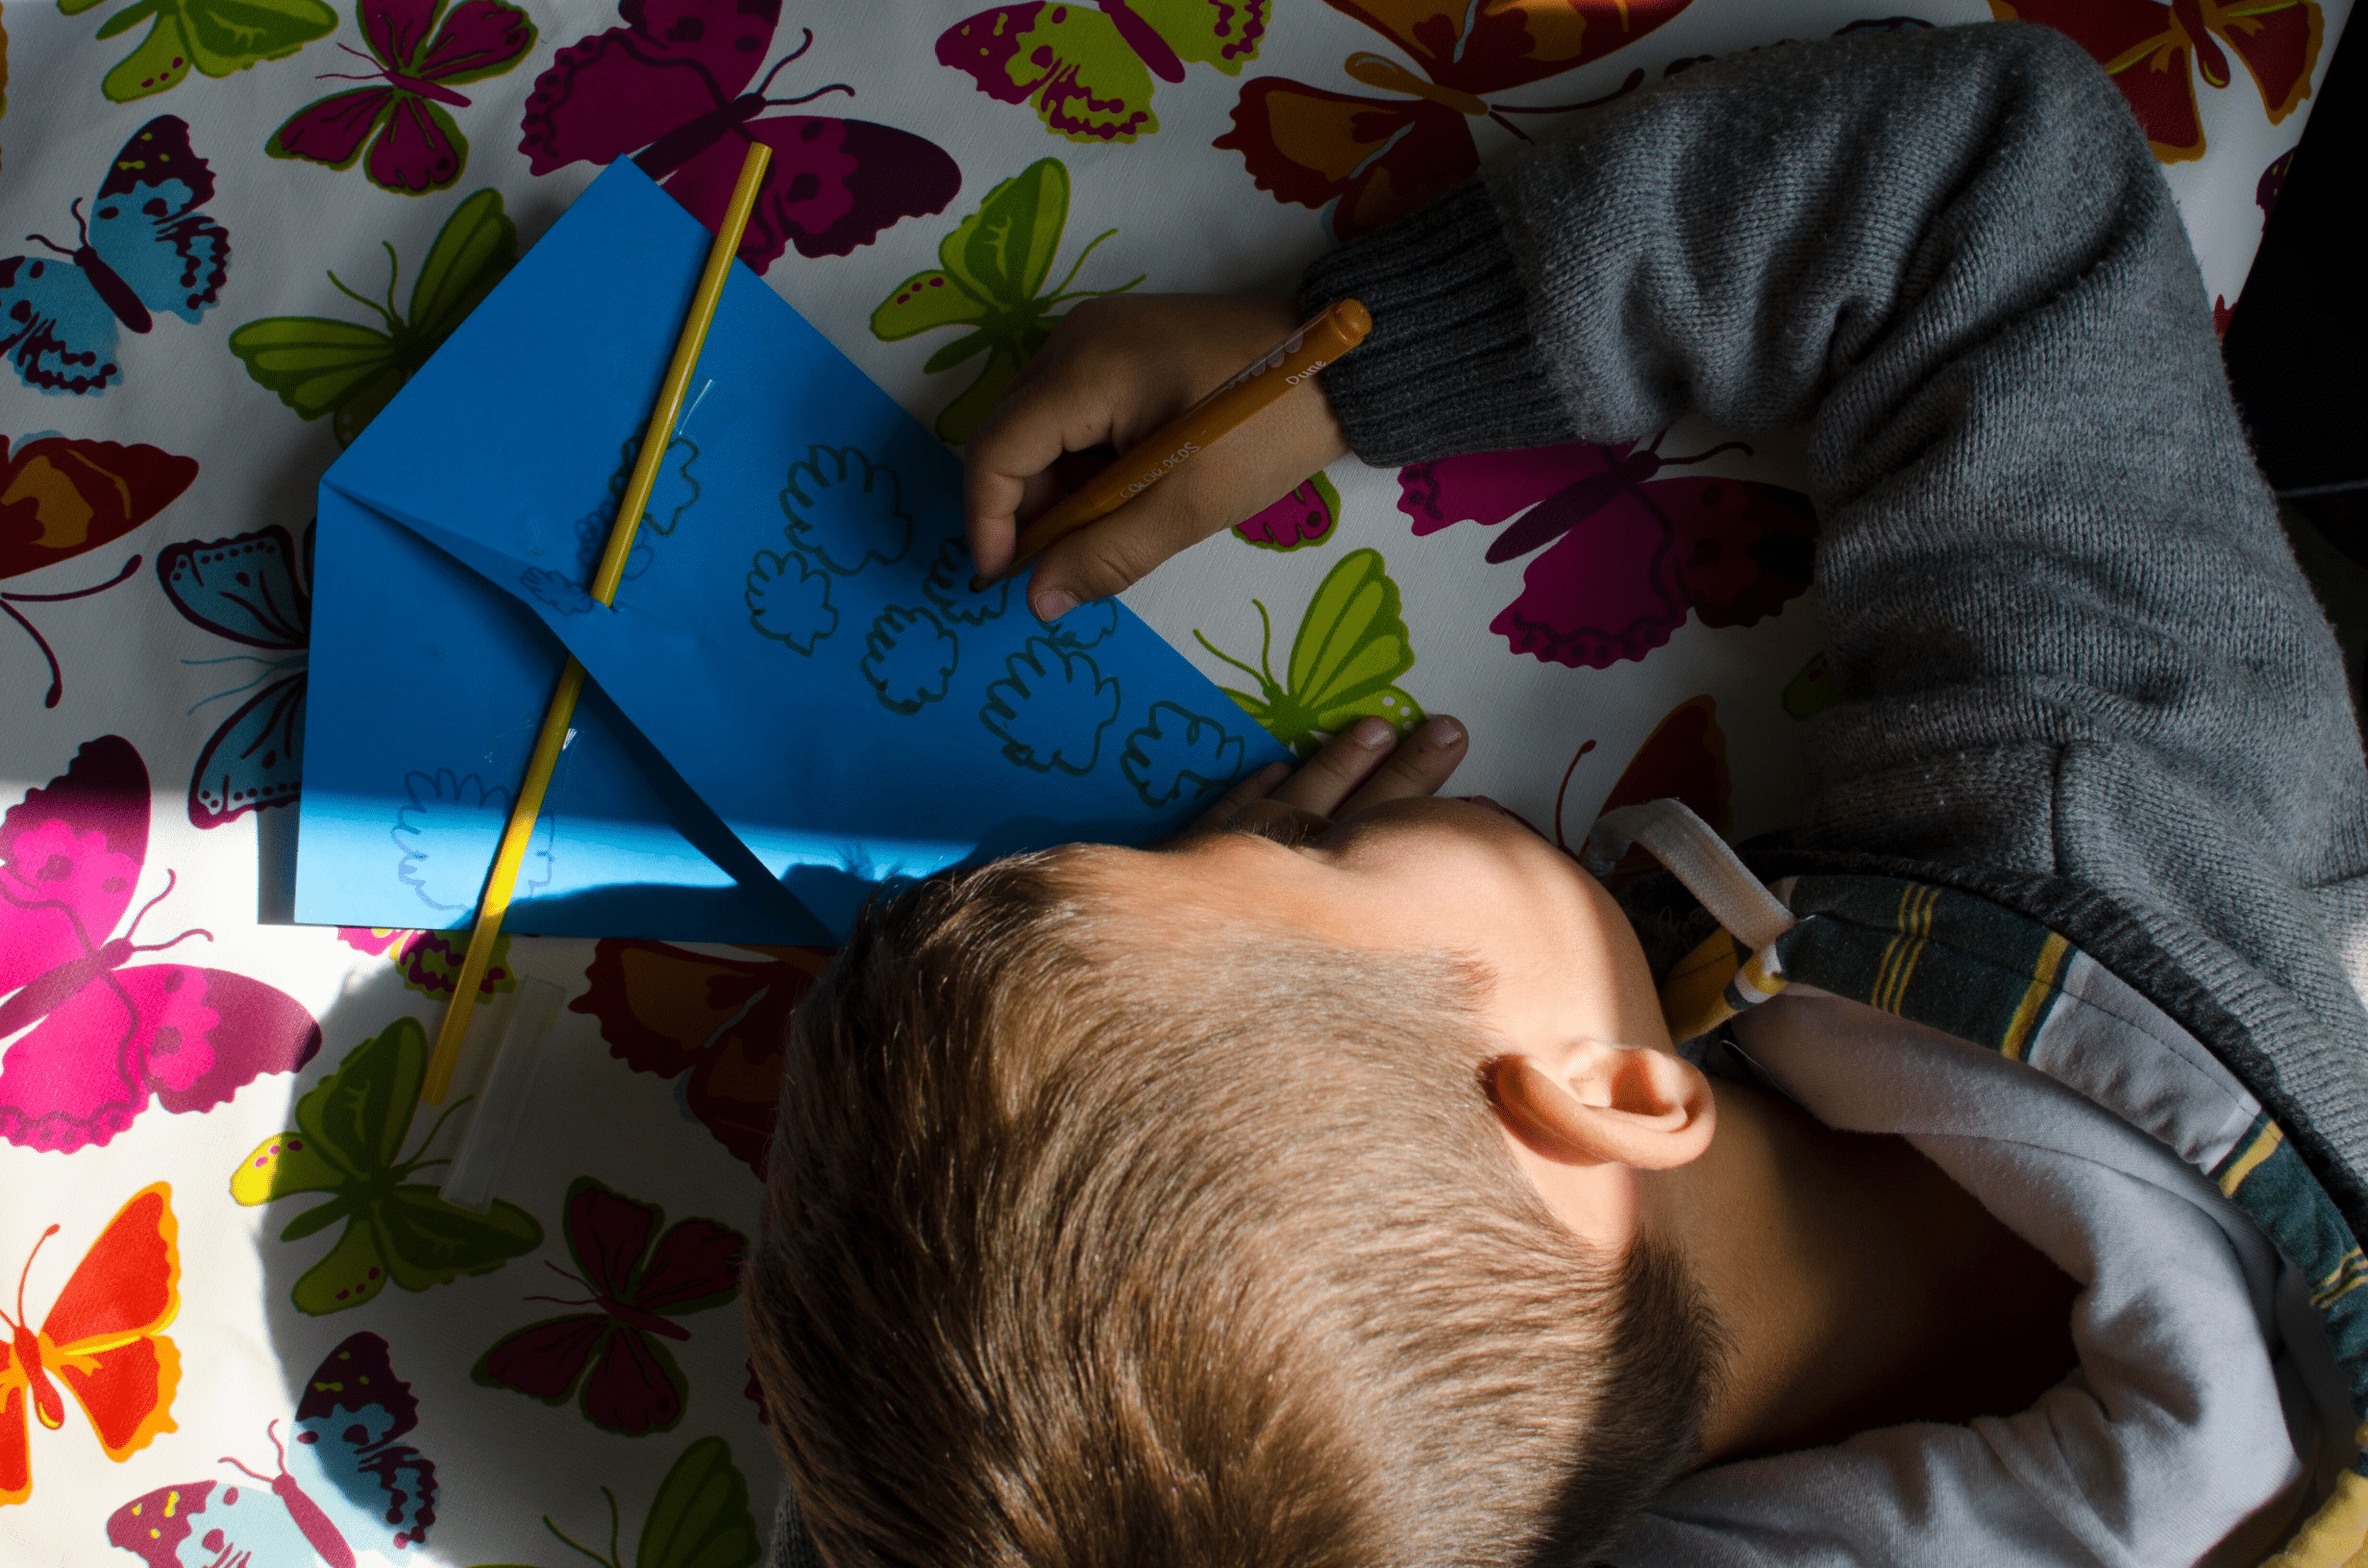 Bilde av en gutt med blondt hår og hettegenser som sitter og tegner på en blå konvolutt. Illustrasjonsbilde: Katerina Ilievska